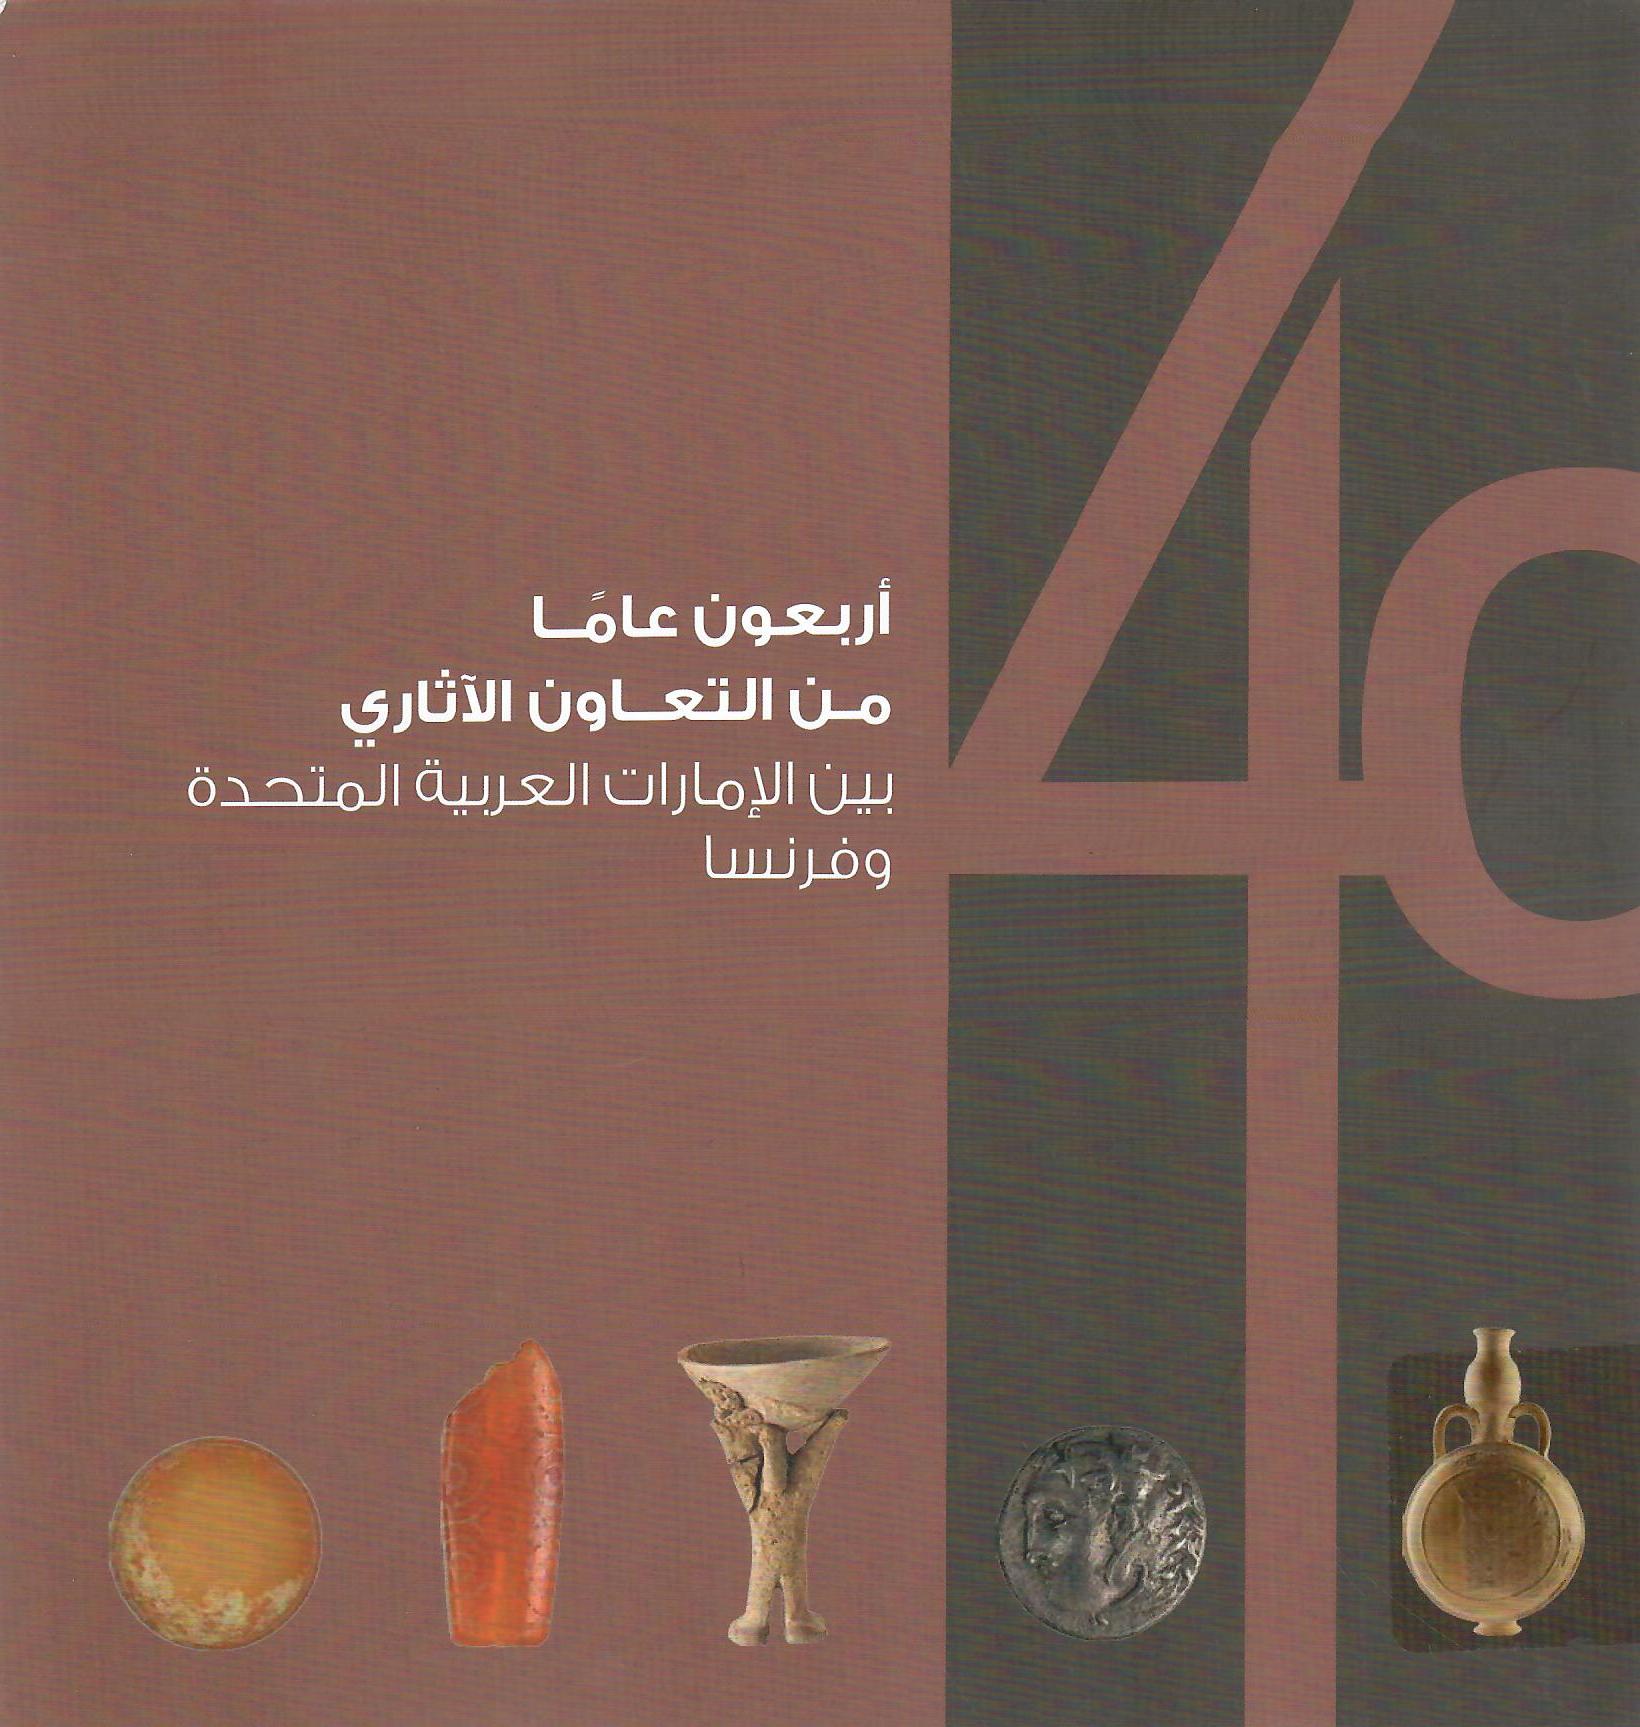 أربعون عاماً من التعاون الأثري بين الإمارات العربية المتحدة وفرنسا